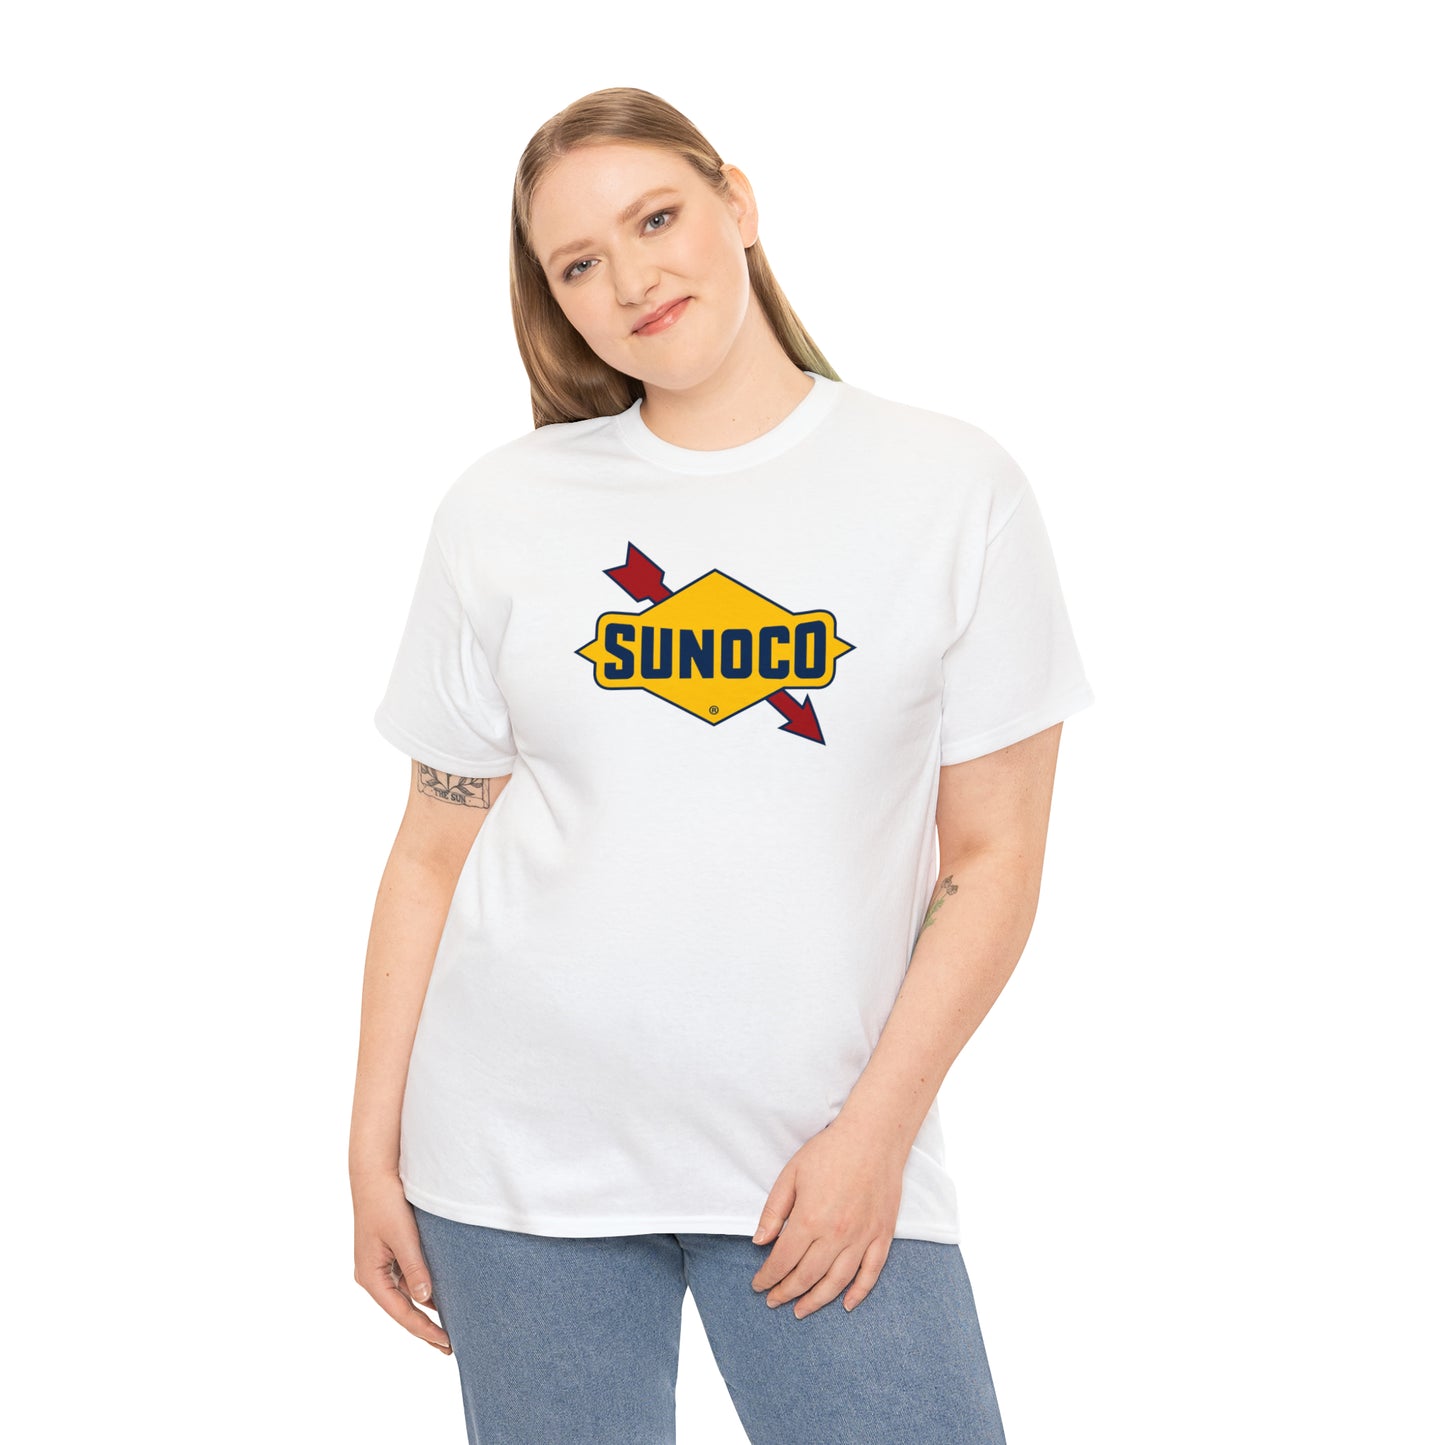 Sunoco T-Shirt